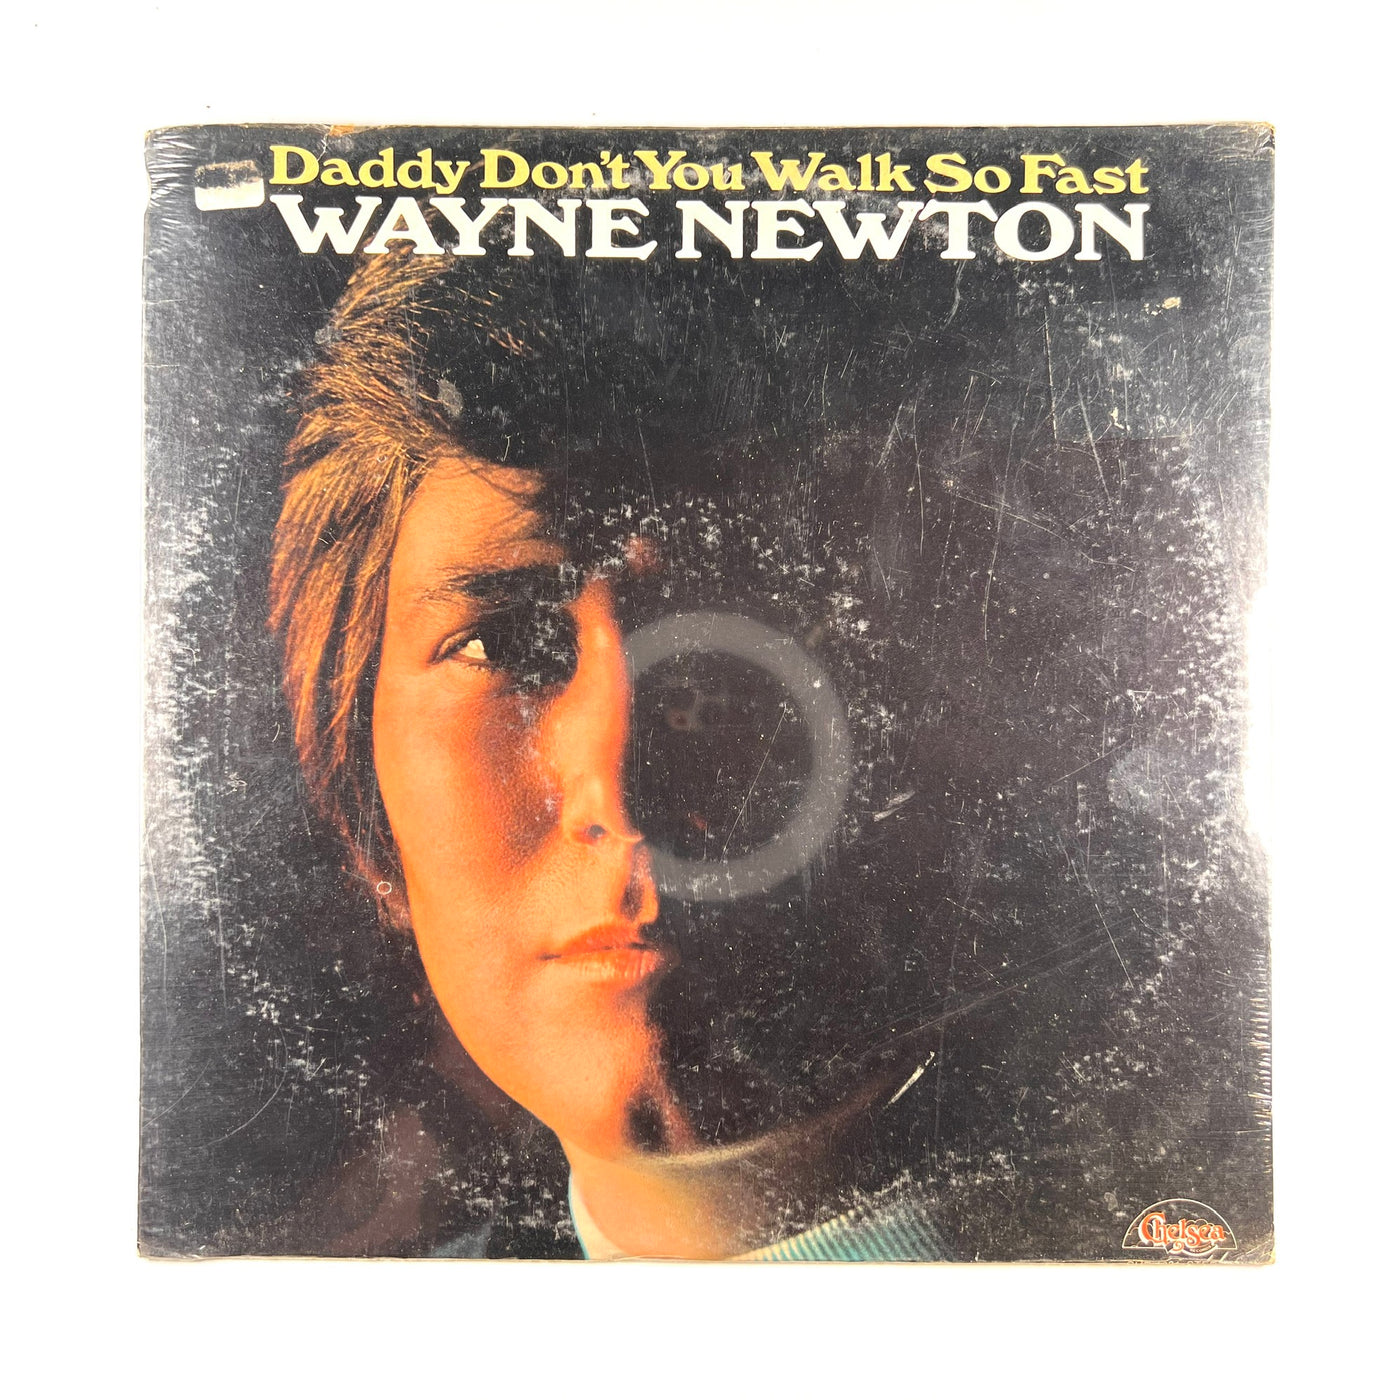 Wayne Newton - Daddy Don't You Walk So Fast